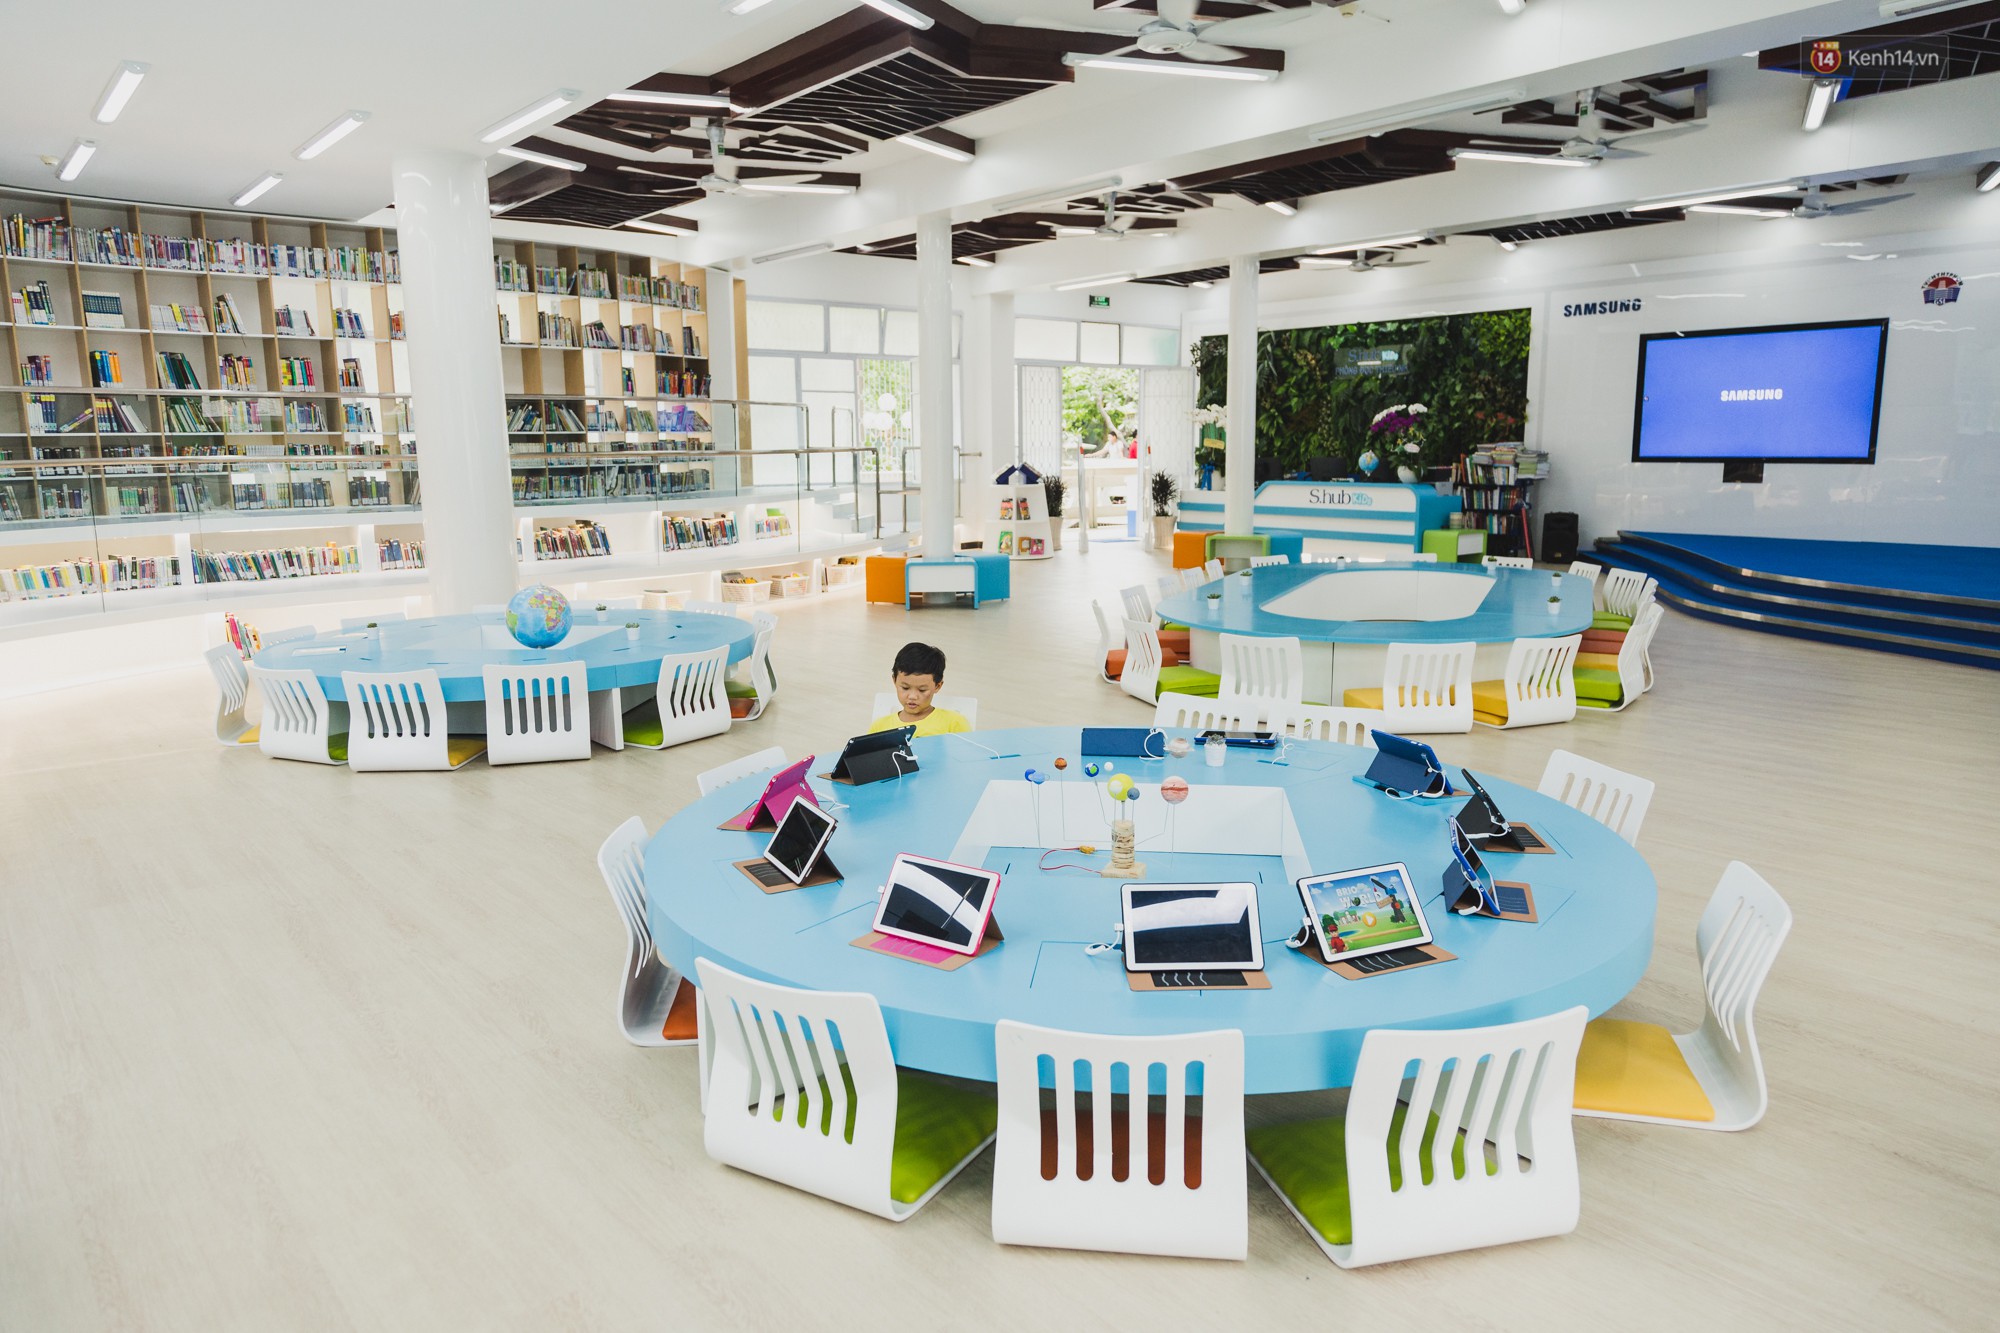 Ảnh thư viện thông minh Shub Kid - Thư viện dành cho thiếu nhi ở Tp.HCM